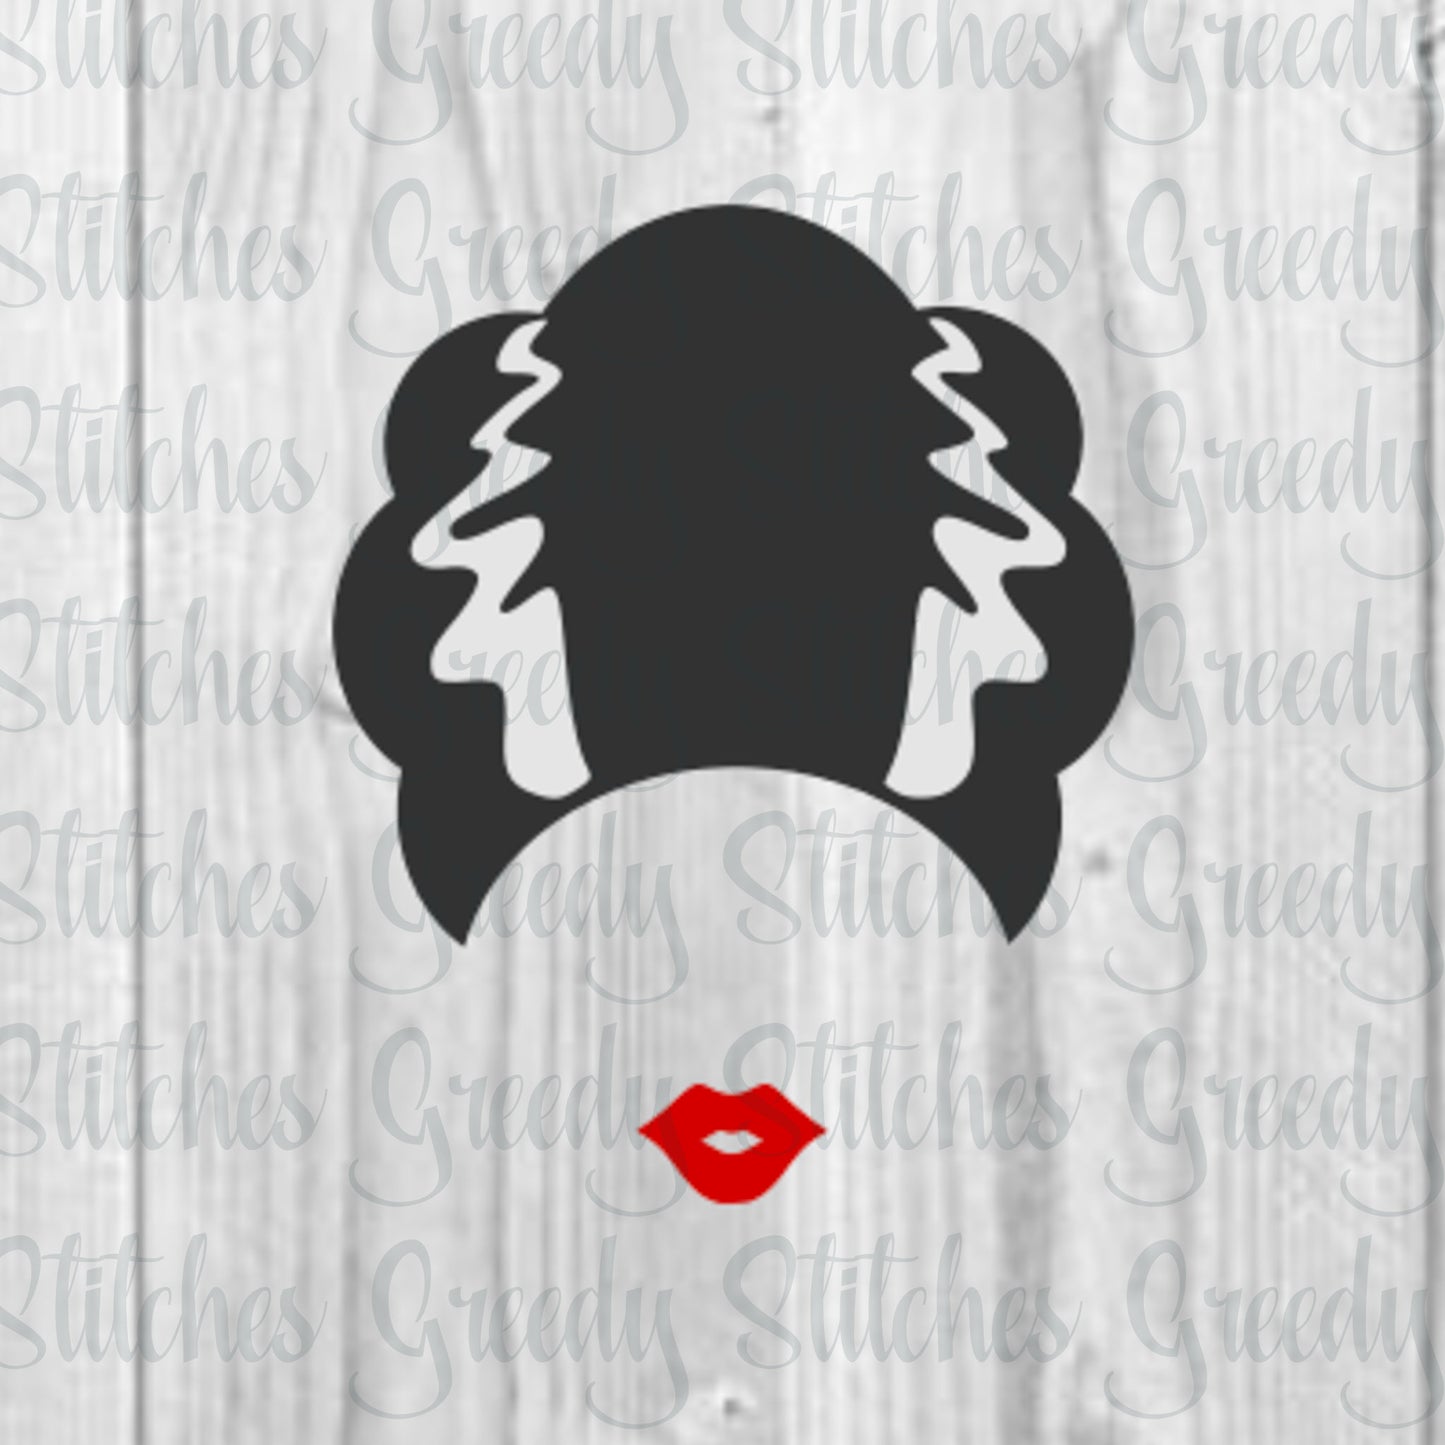 Bride of Frankenstein SVG | Trick or Treat SVG | Frankenstein svg, dxf, eps, png. Scary Hair SvG | Halloween SvG | Instant Download Cut File